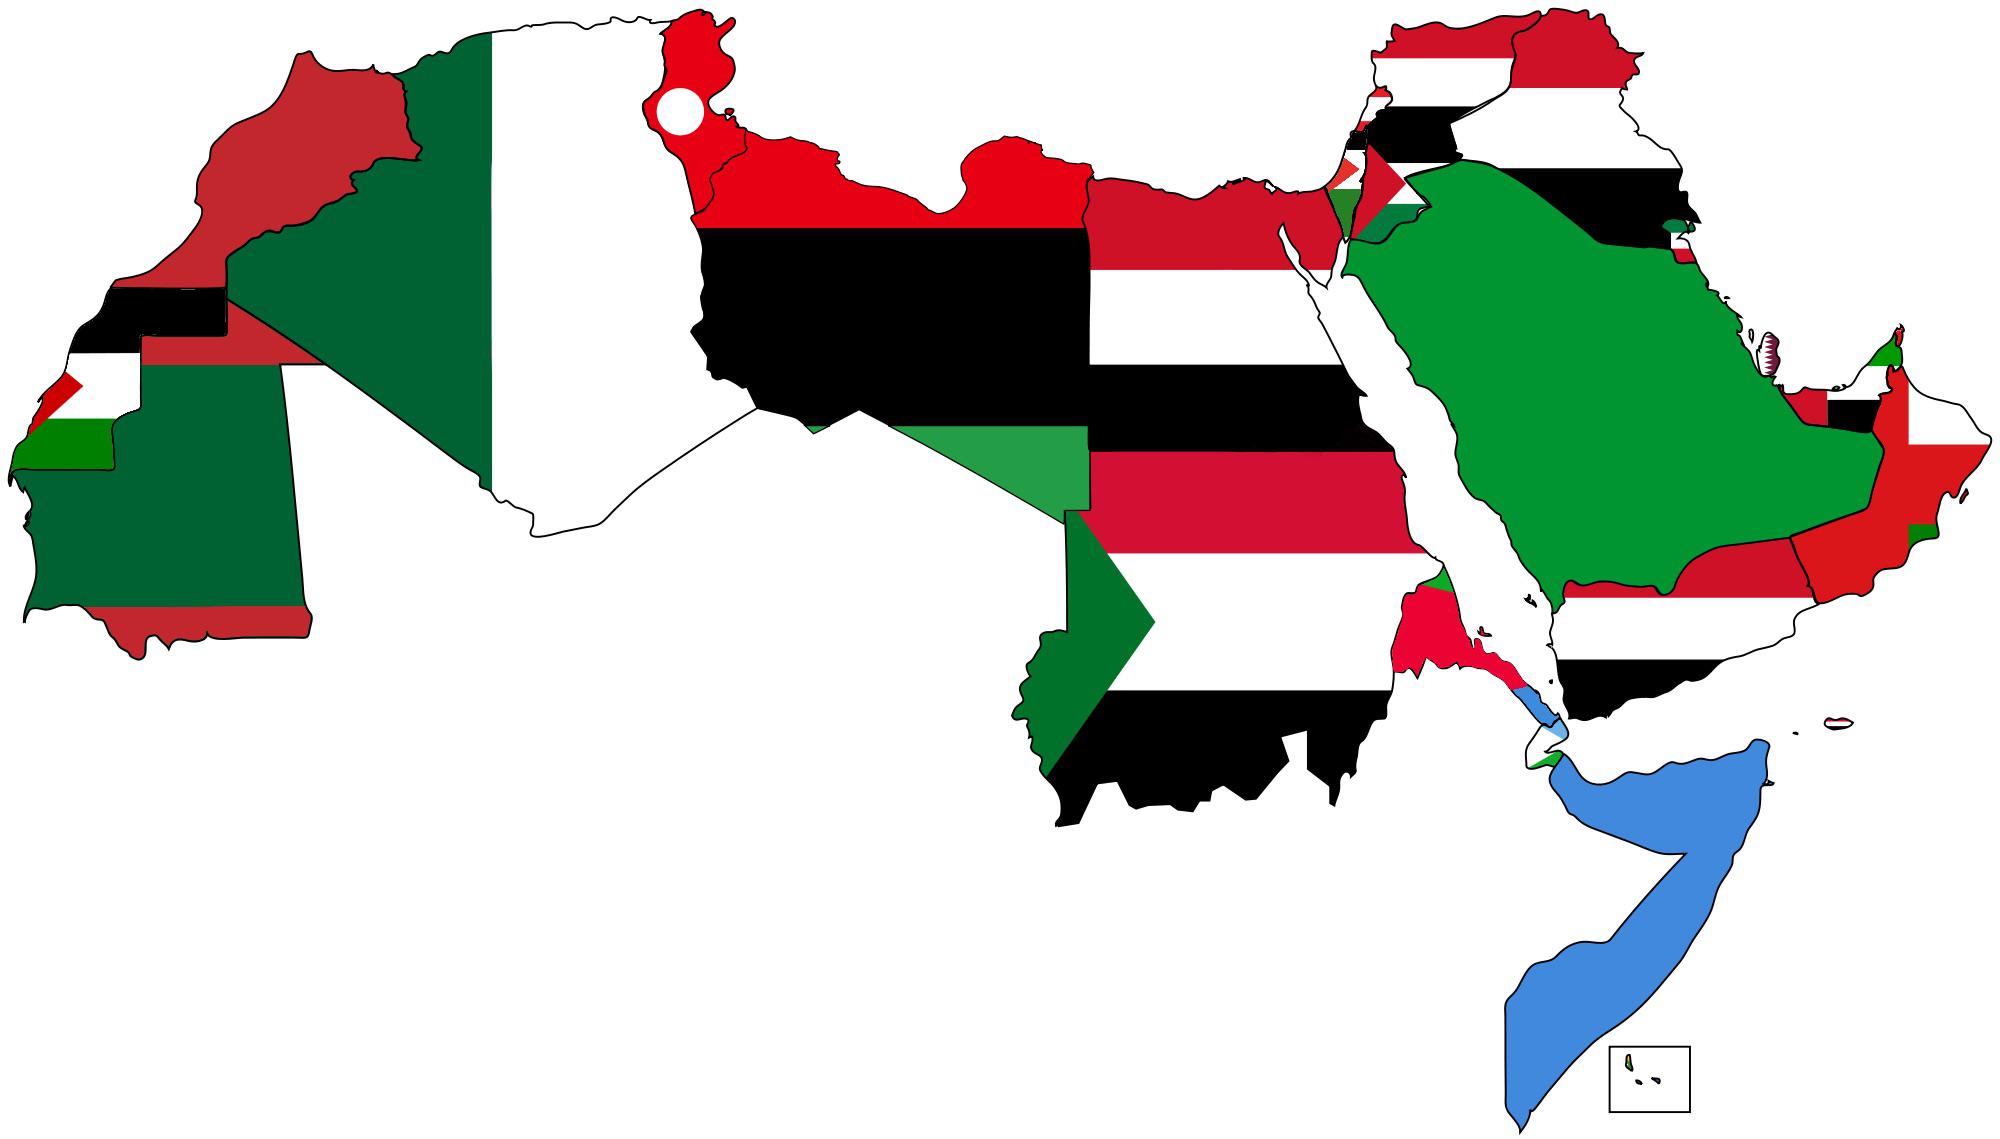 أعلام دول الوطن العربي علي القارة